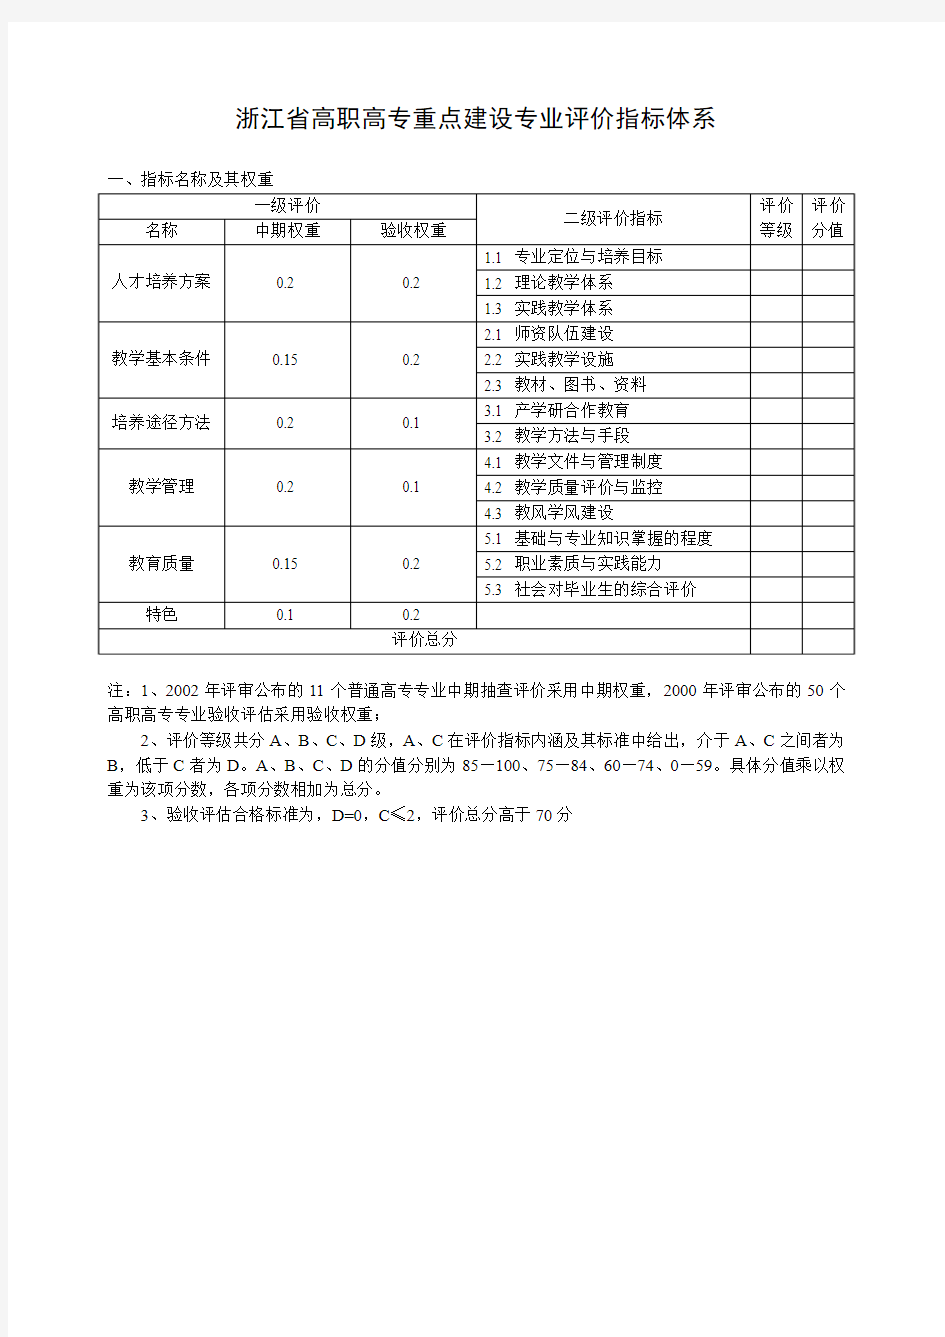 浙江省高职高专重点建设专业评价指标体系